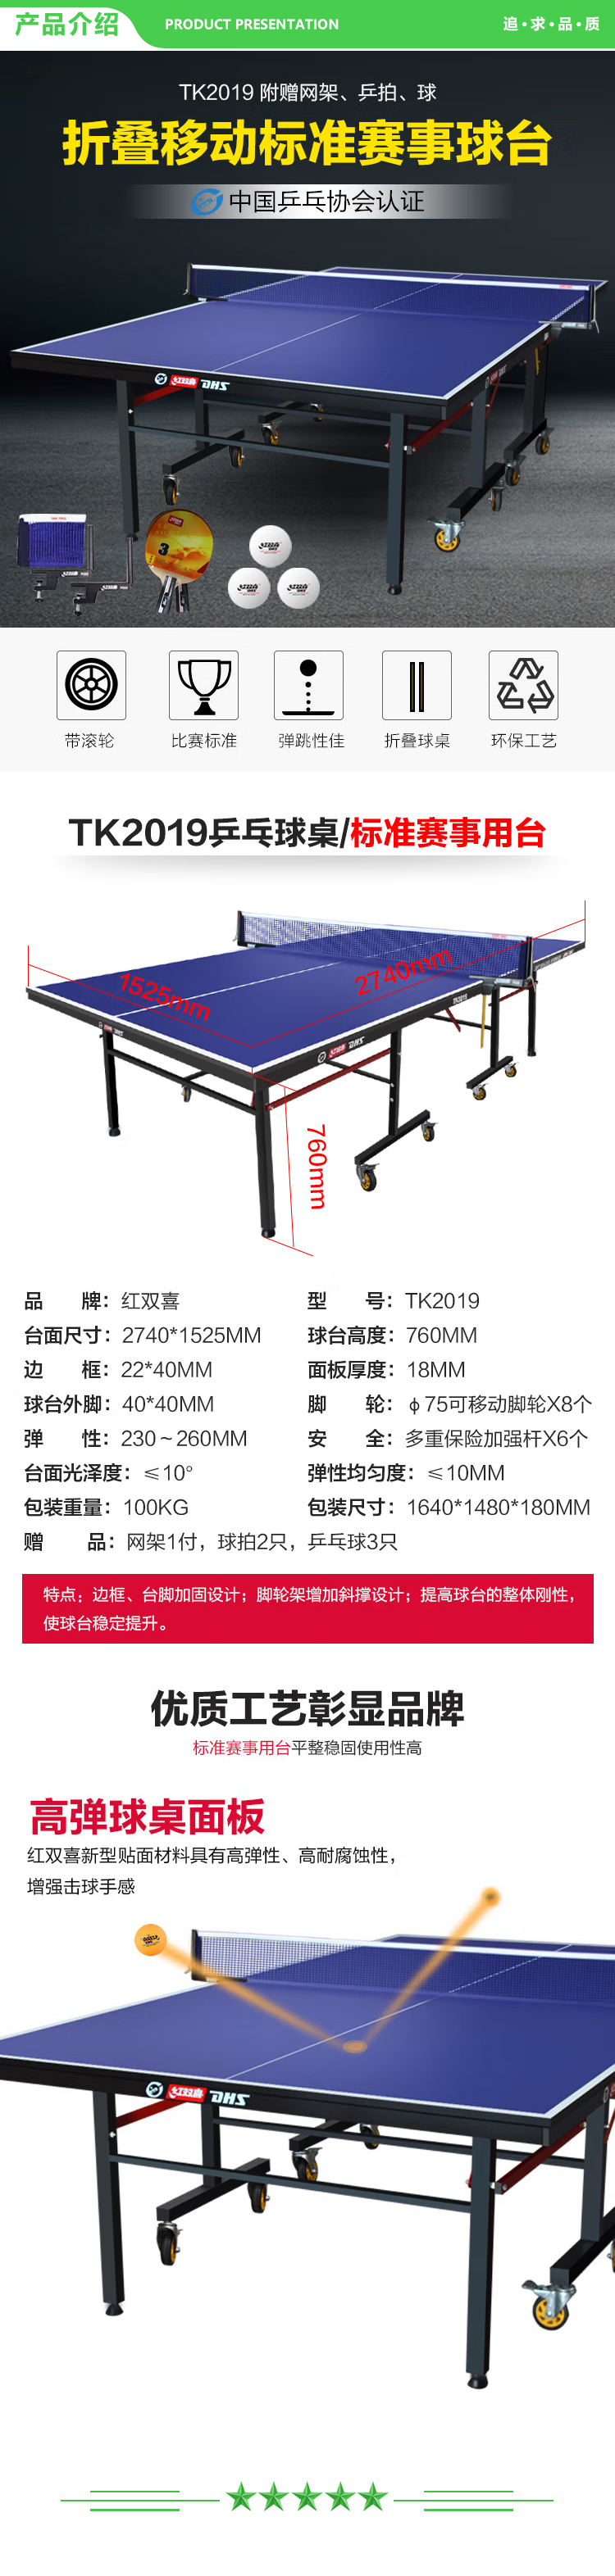 红双喜 DHS TK2019 专业移动折叠乒乓球桌标准比赛乒乓球台(含一付乒乓球拍、乒乓球、网架)  (2).jpg